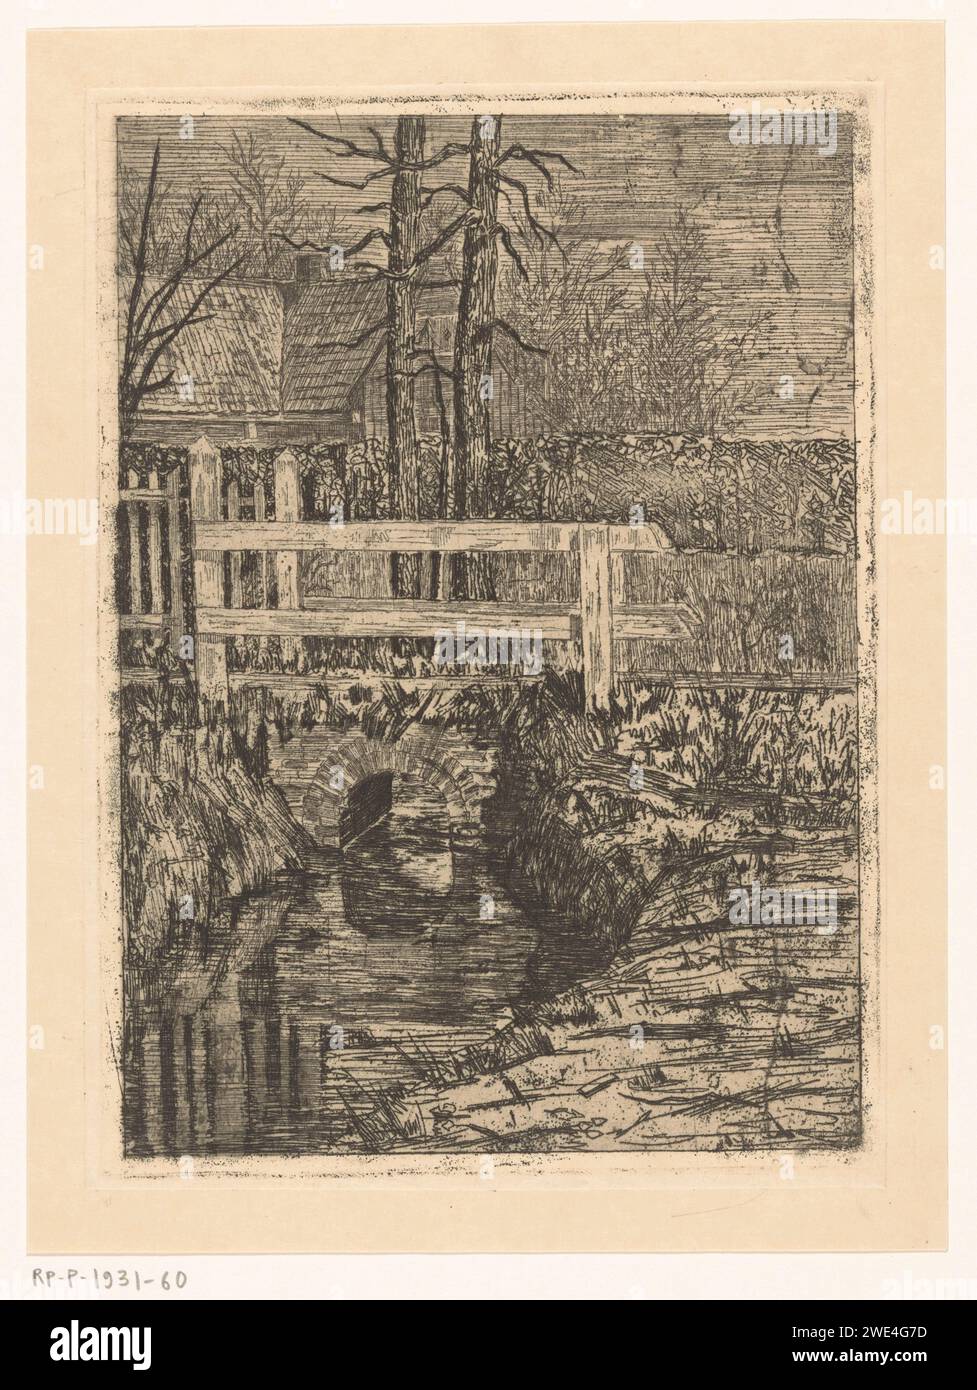 Pont avec main courante en bois au-dessus d'un fossé, Martinus van Regteren Altena, 1876 - 1908 impression à gauche en arrière-plan une maison. pont de gravure de papier. petit canal, fossé Banque D'Images